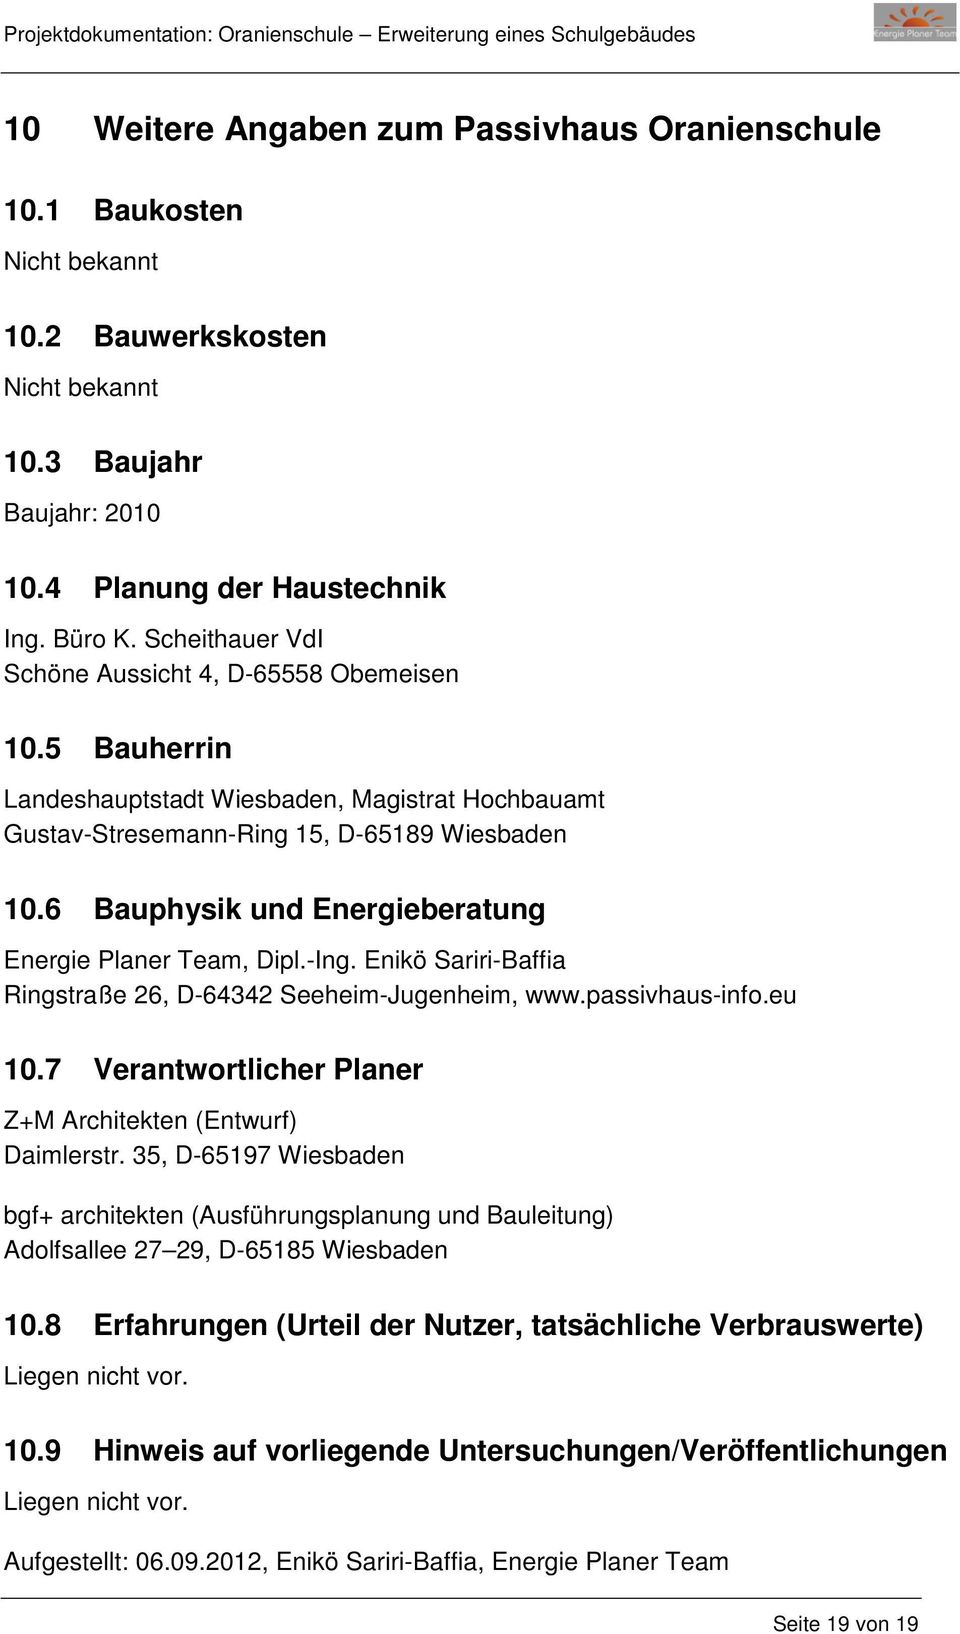 6 Bauphysik und Energieberatung Energie Planer Team, Dipl.-Ing. Enikö Sariri-Baffia Ringstraße 26, D-64342 Seeheim-Jugenheim, www.passivhaus-info.eu 10.